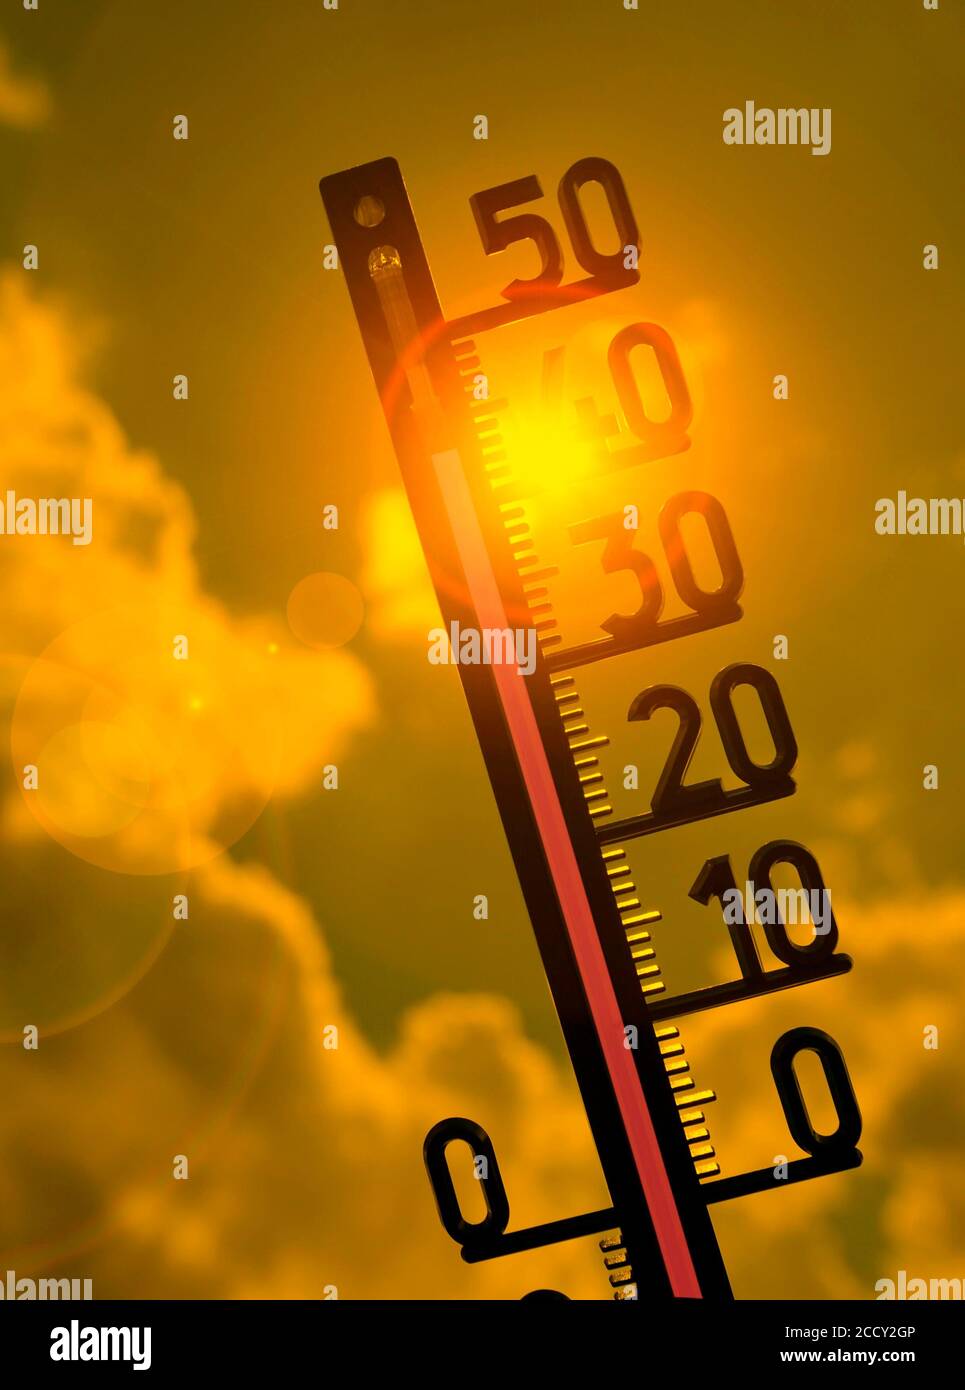 Immagine simbolo onda di calore, termometro al sole, 42 gradi Celsius, Baden-Wuerttemberg, Germania Foto Stock